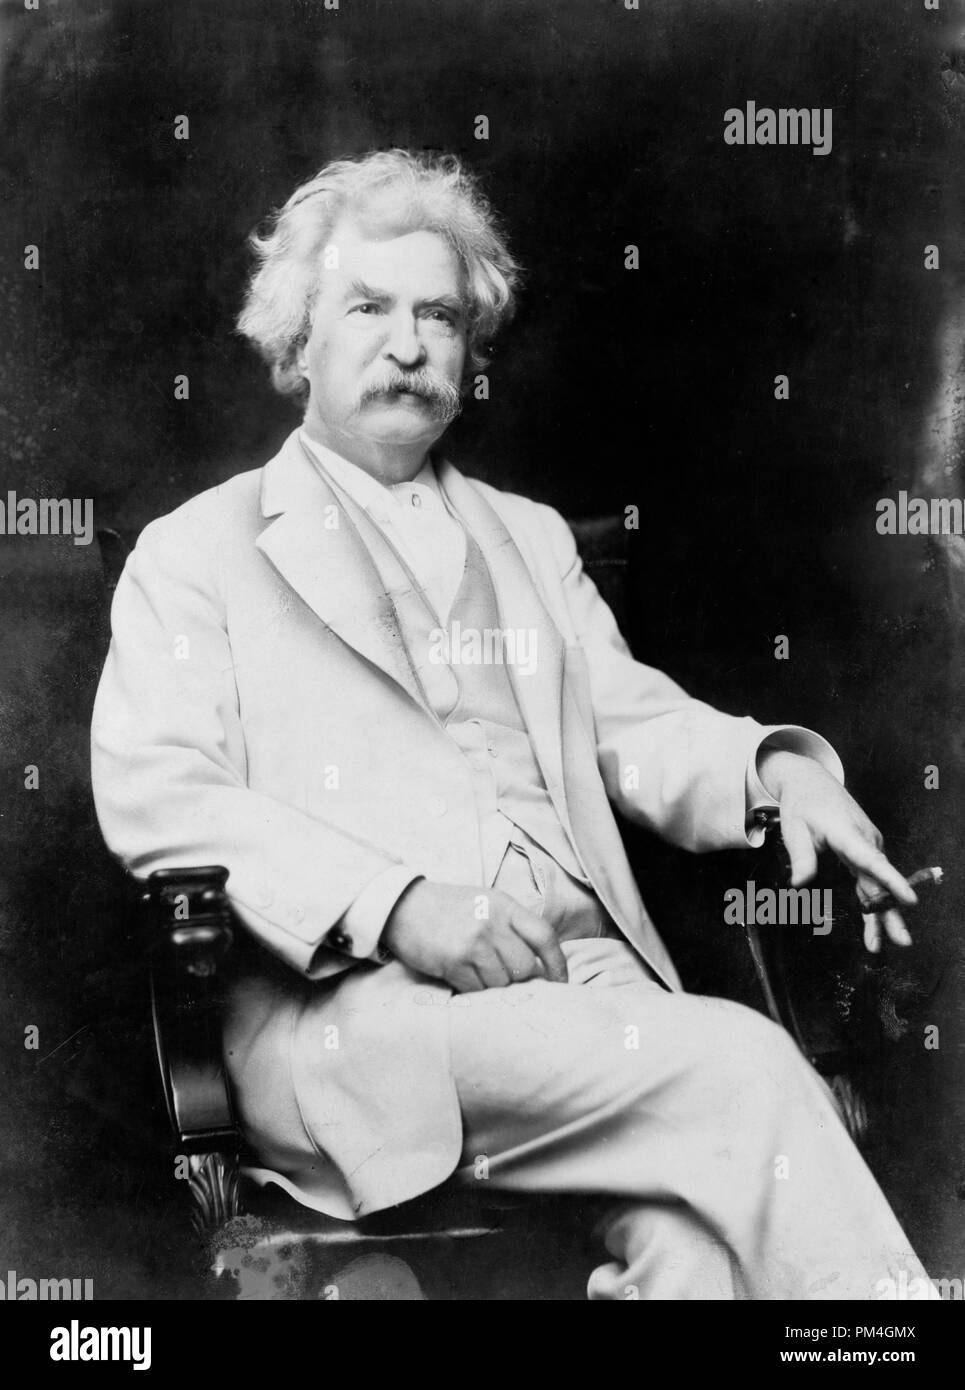 Mark Twain, tres cuartos de longitud vertical, sentado, mirando hacia la derecha, con cigarro en mano, circa 1907. Archivo de referencia # 1003 065tha Foto de stock